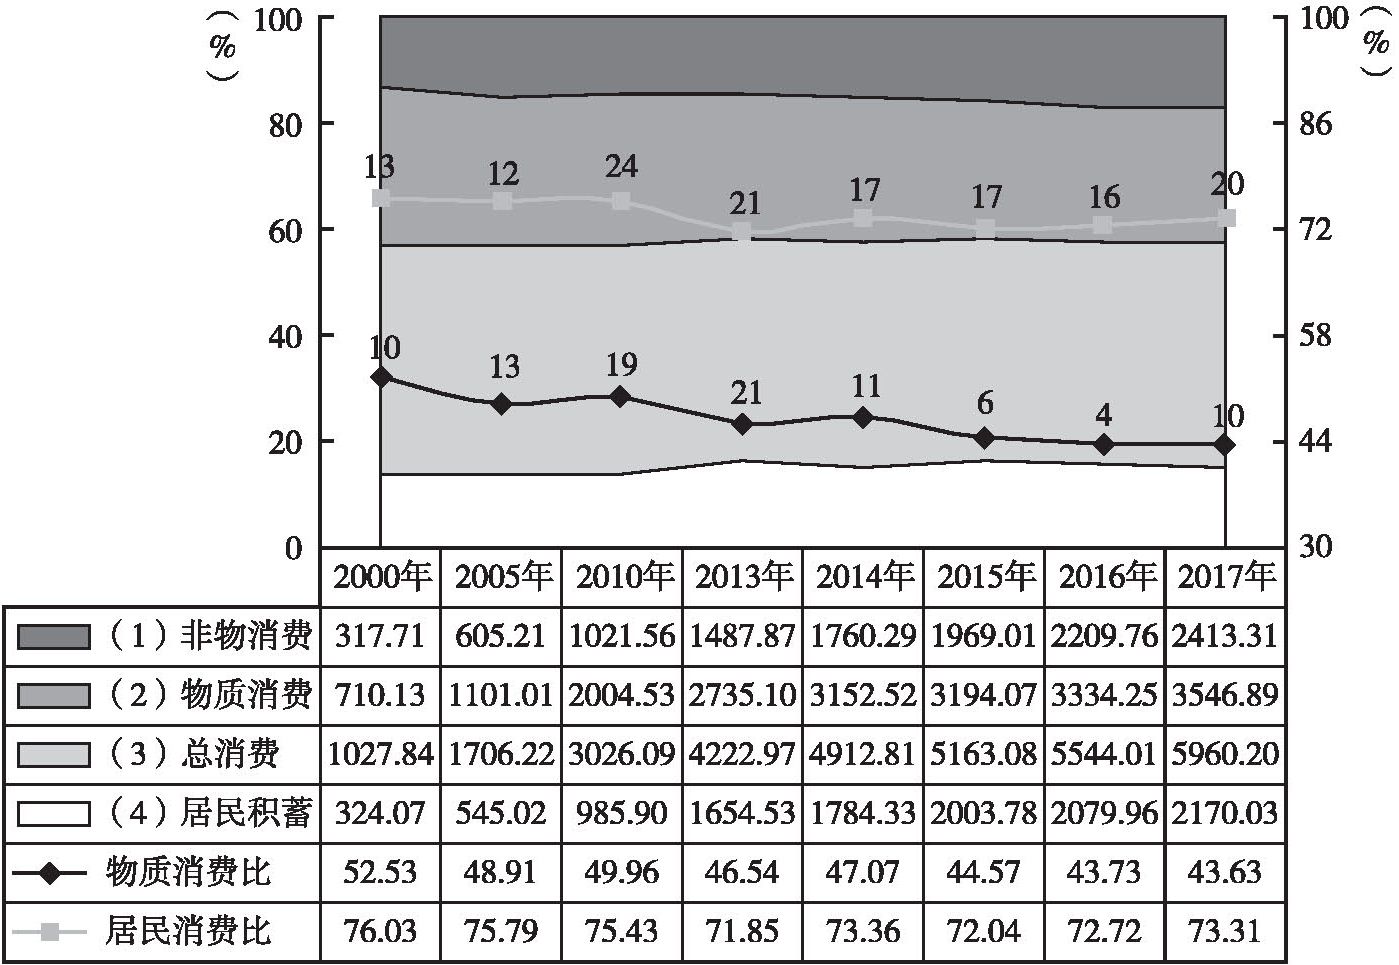 图1 黑龙江城乡主要民生数据增长变化基本情况